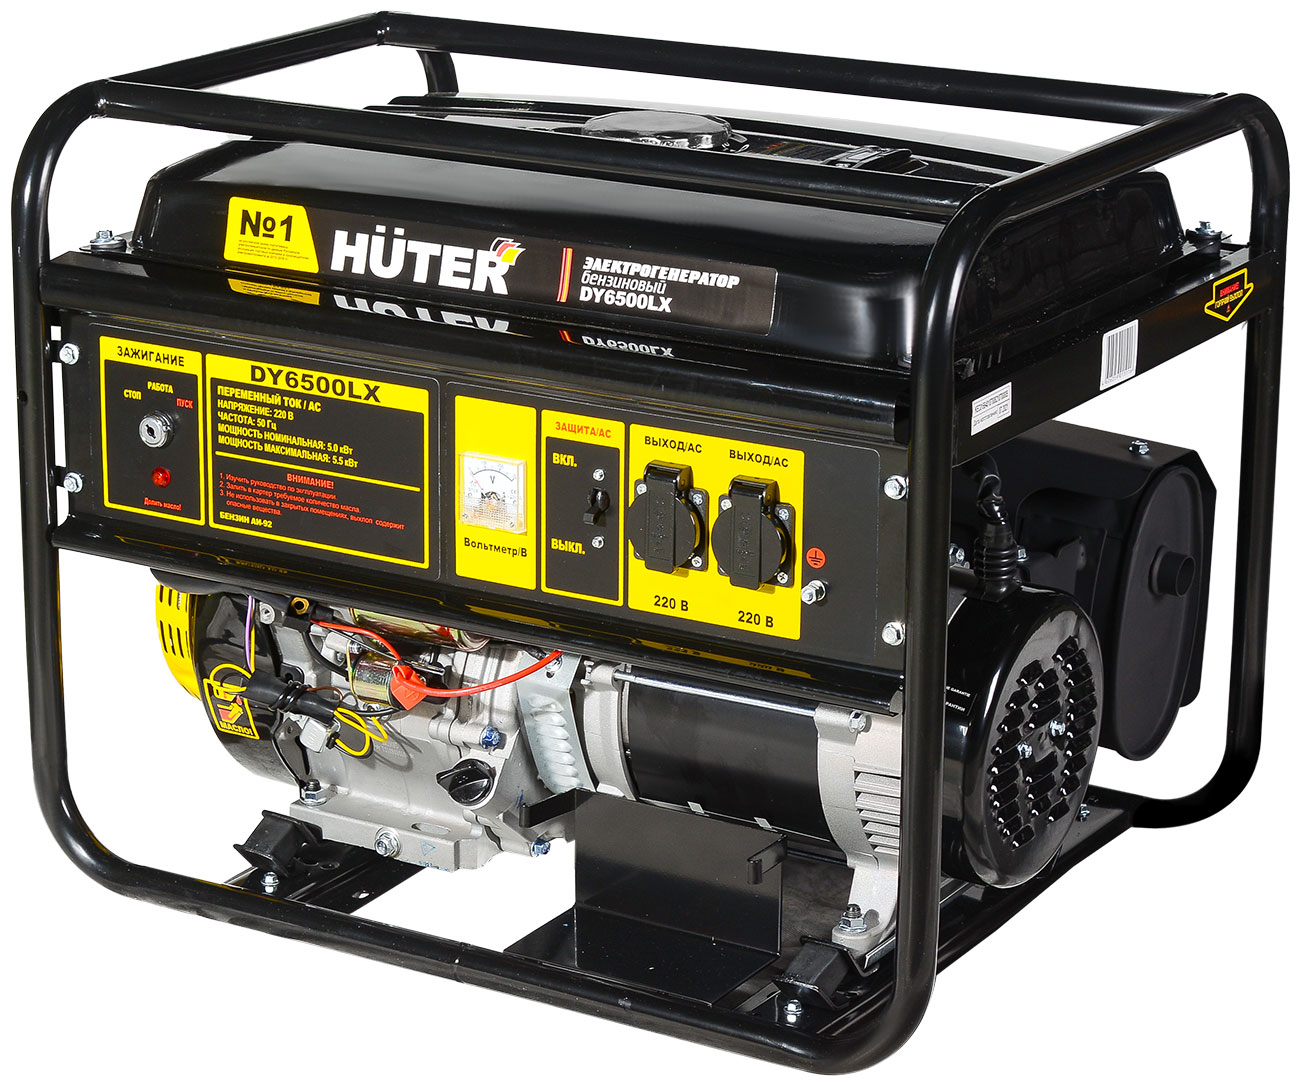 электрический генератор и электростанция huter dy5000l Электрический генератор и электростанция Huter DY6500LX- электростартер